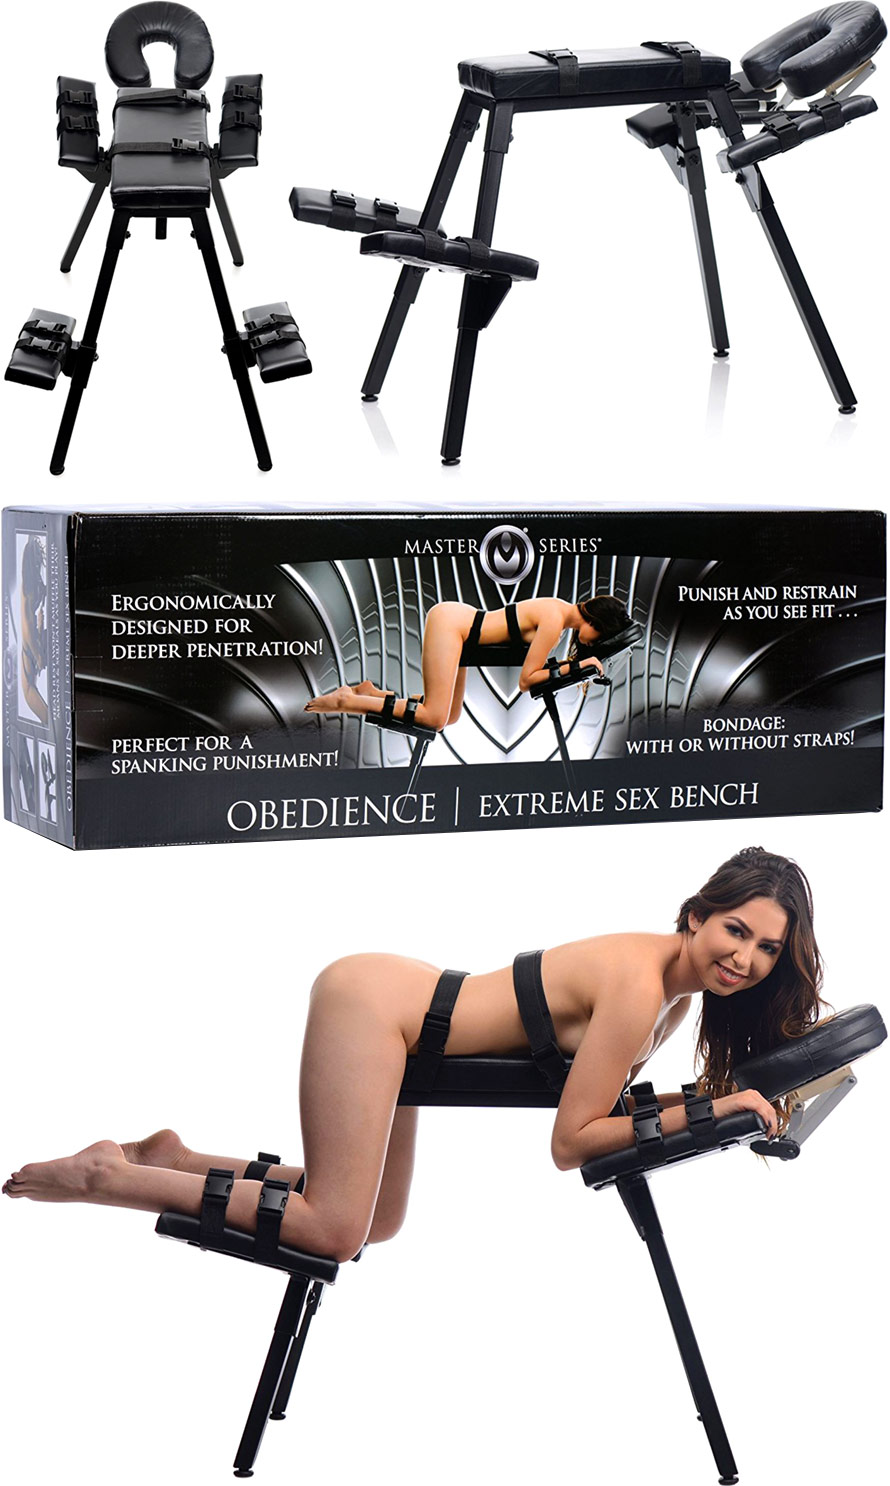 Table de bondage ajustable Obedience Extreme Sex Bench